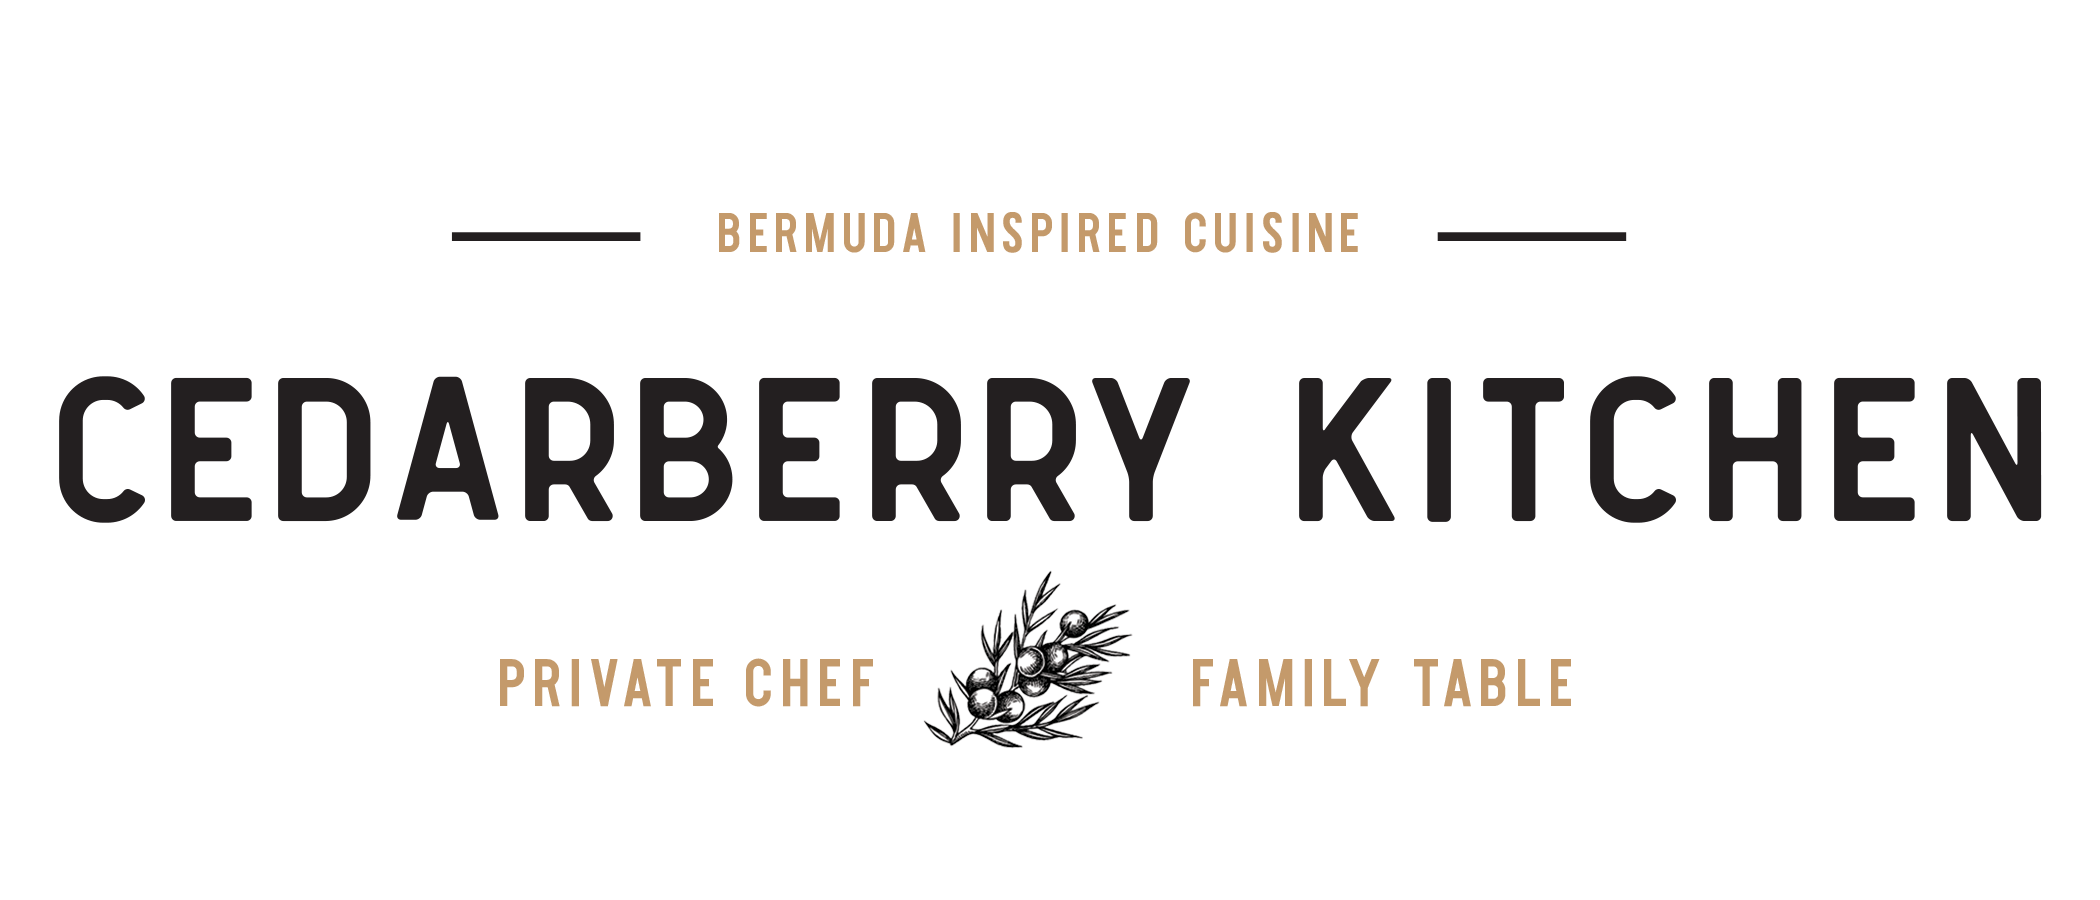 Cedarberry Kitchen  |  Bermuda